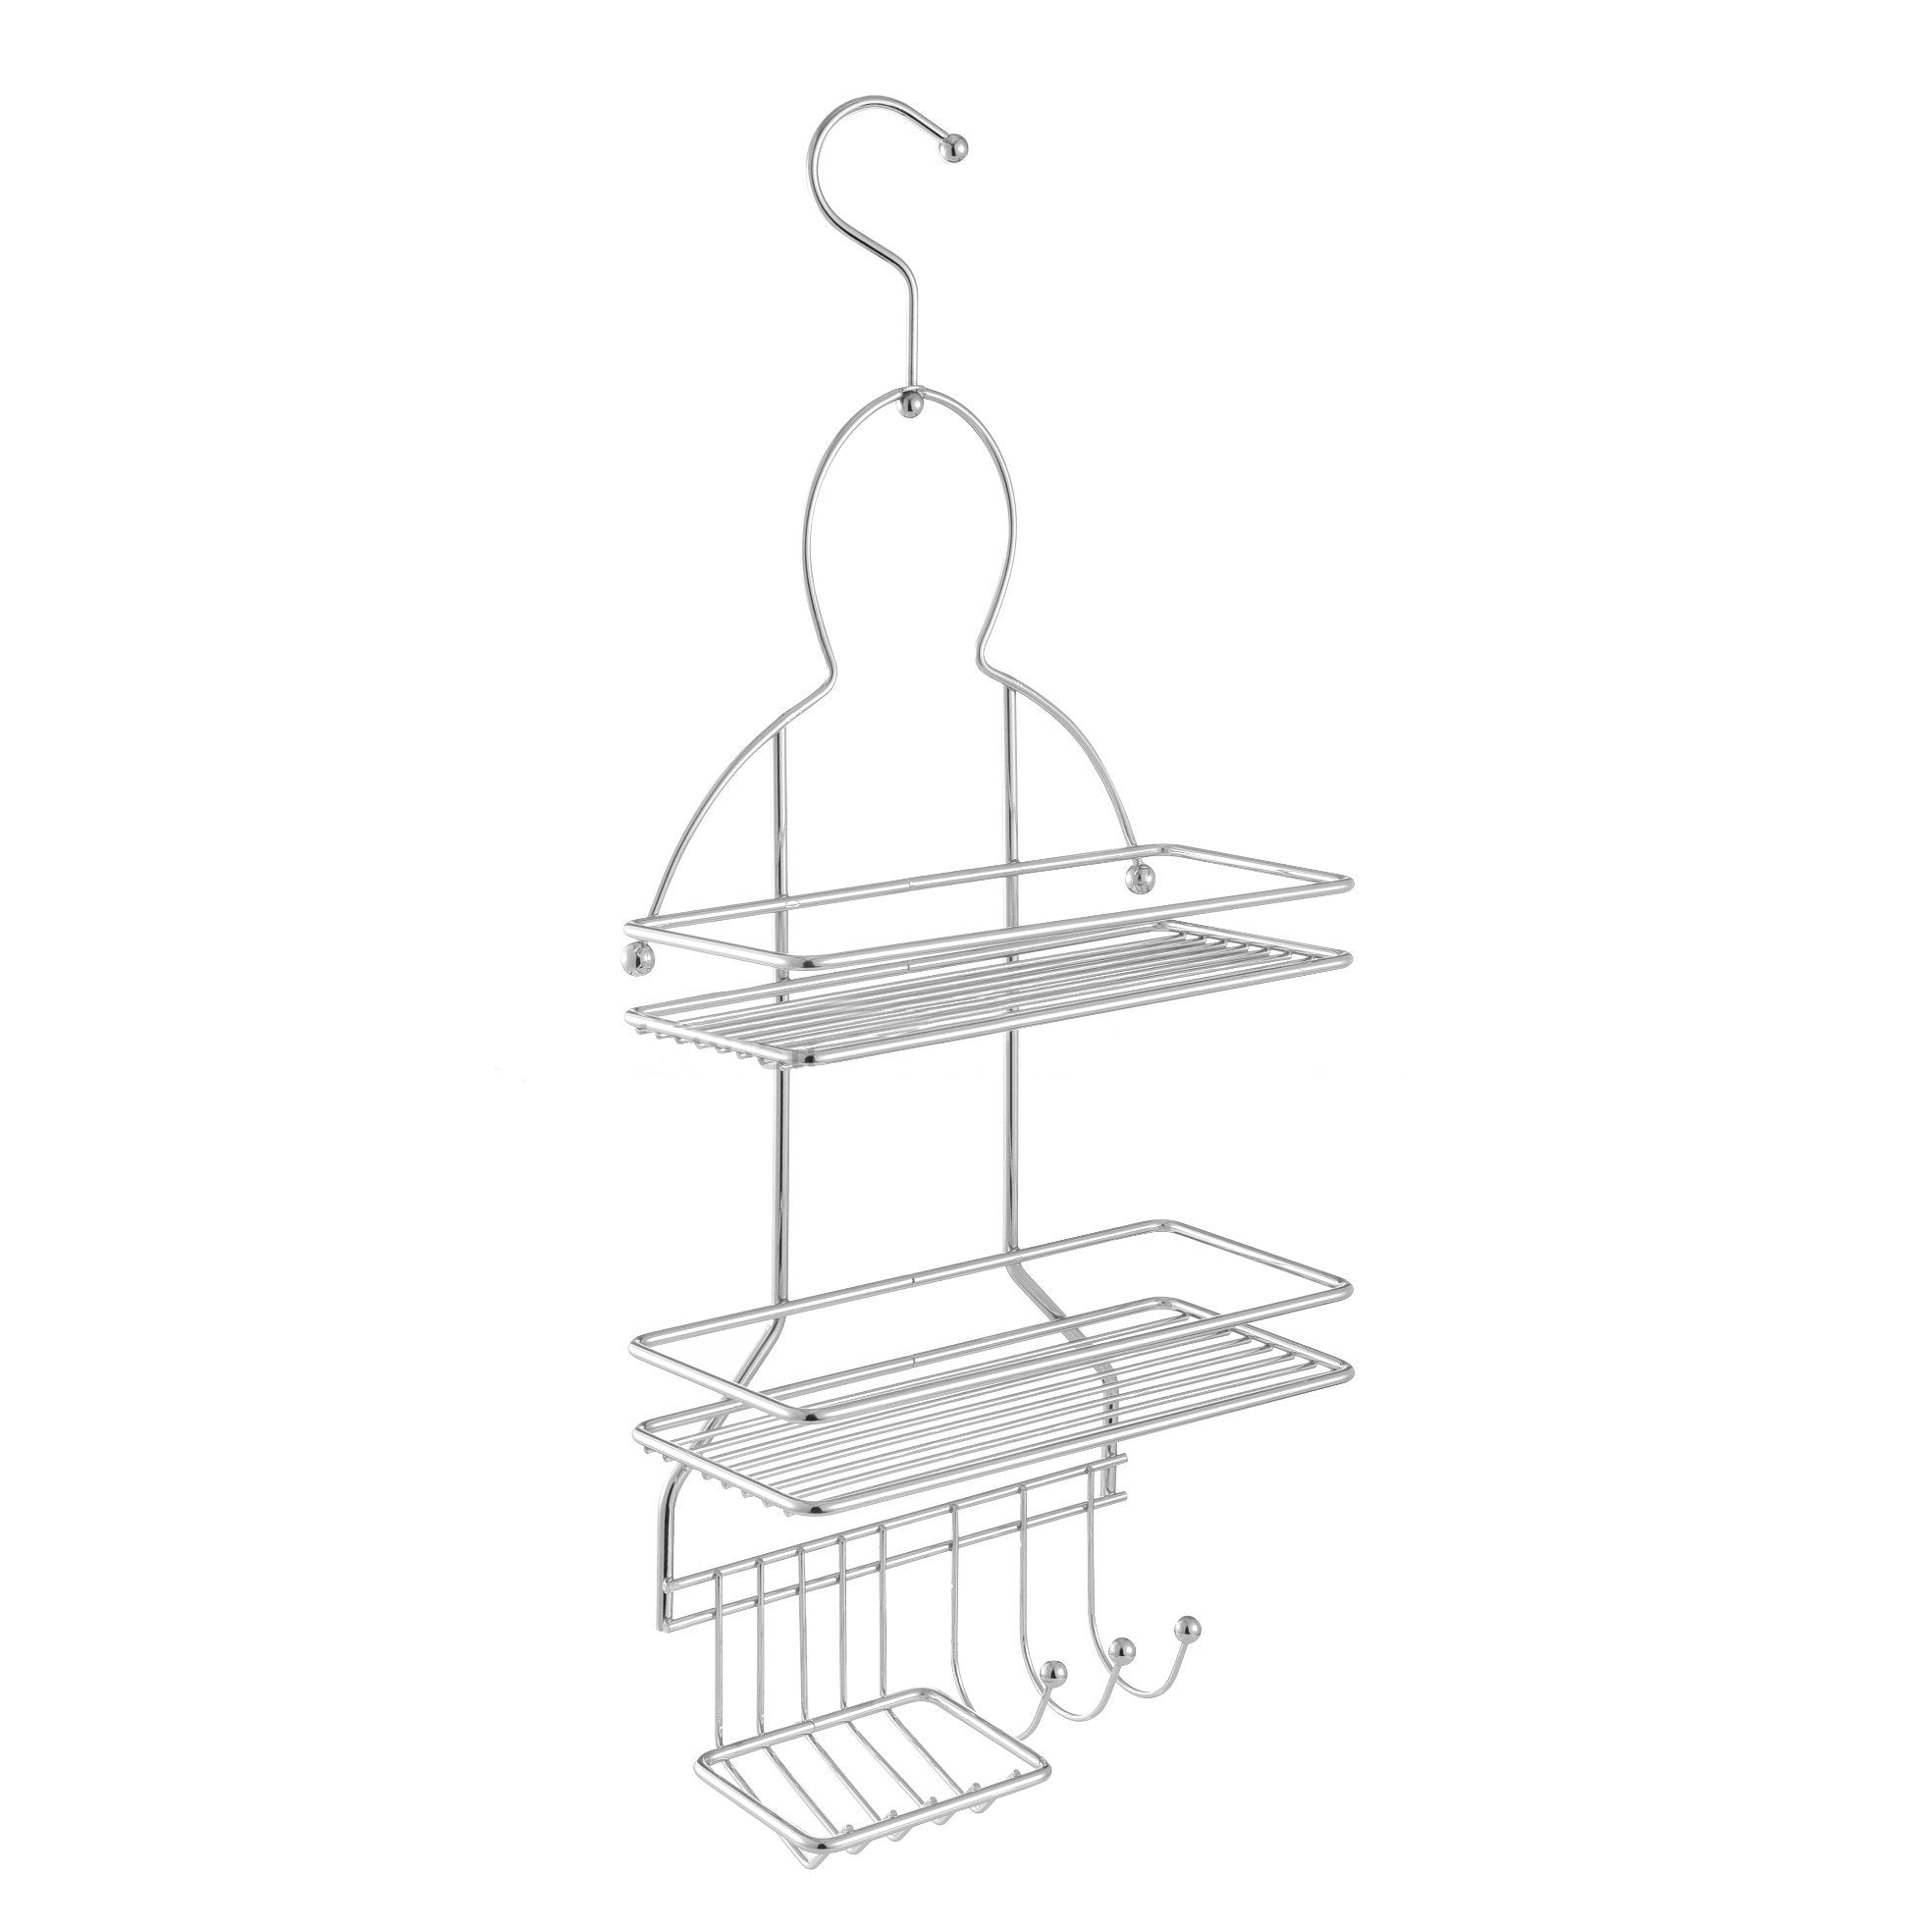 Nes Home 3 Tier Hanging Shower Caddy Storage Organizer Basket